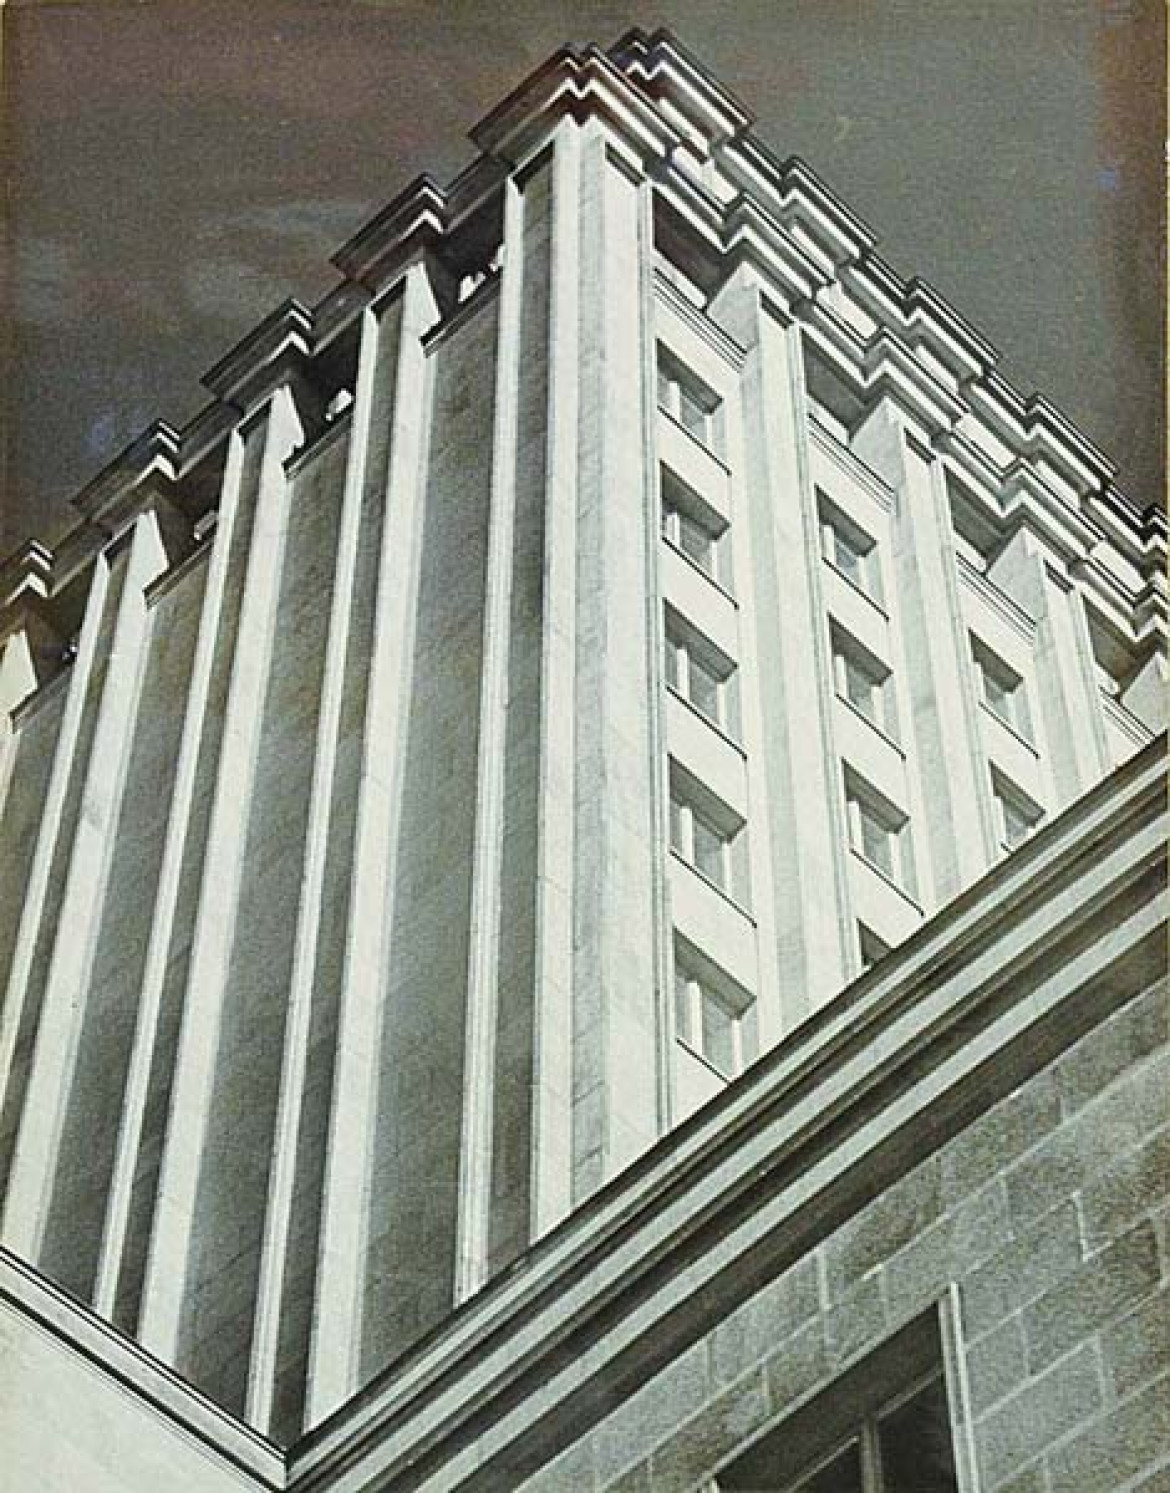 fot. Jan Weselik, "Nowoczesna architektura", przed 1959 r, cena wywoławcza 500 zł, cena uzyskana 700 zł